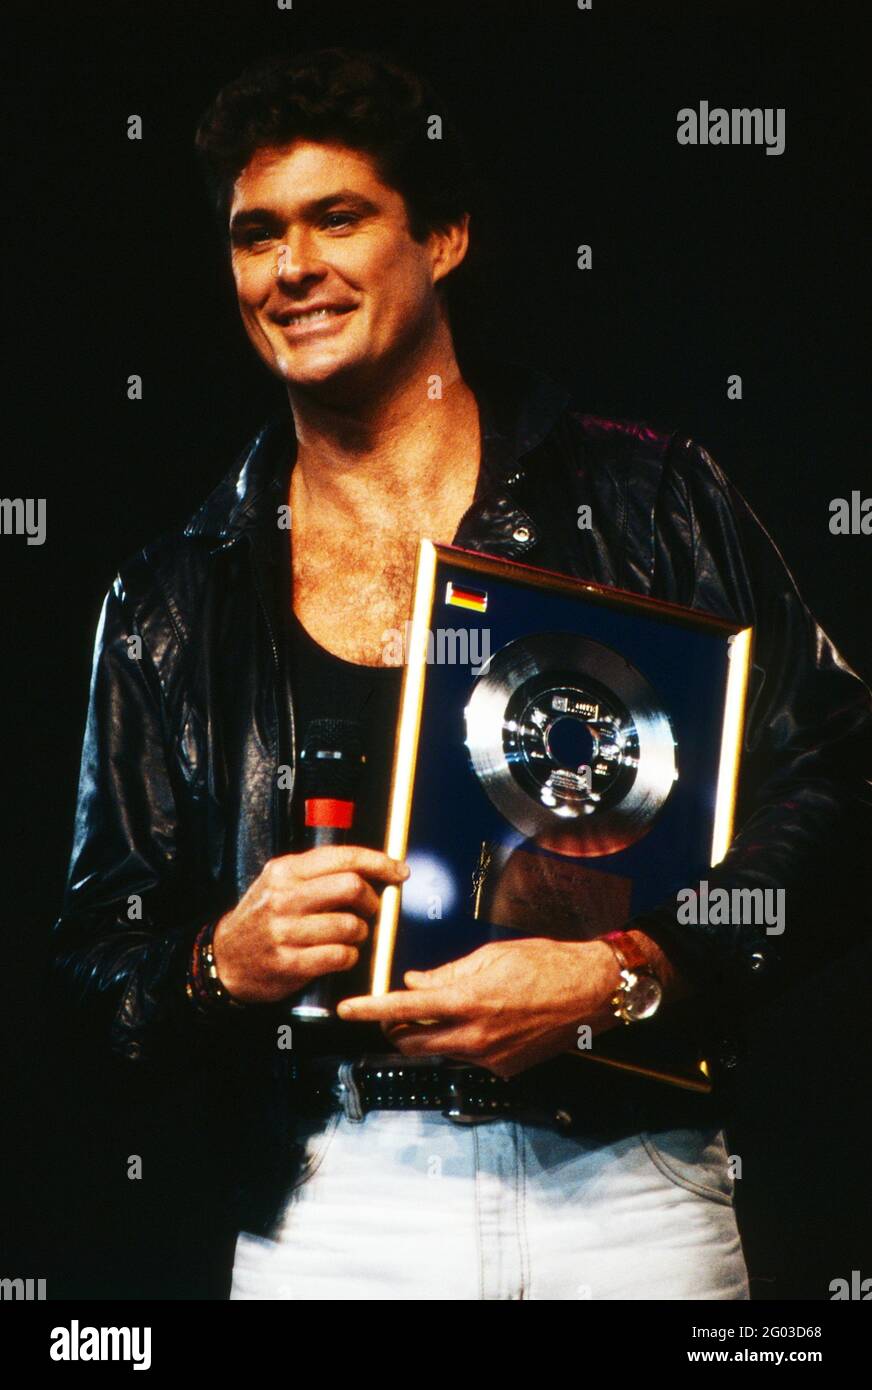 David Hasselhoff, amerikanischer Schauspieler und Sänger,erhält einen Musikpreis für optimale Singleverkäufe, Deutschland 1989. Stock Photo